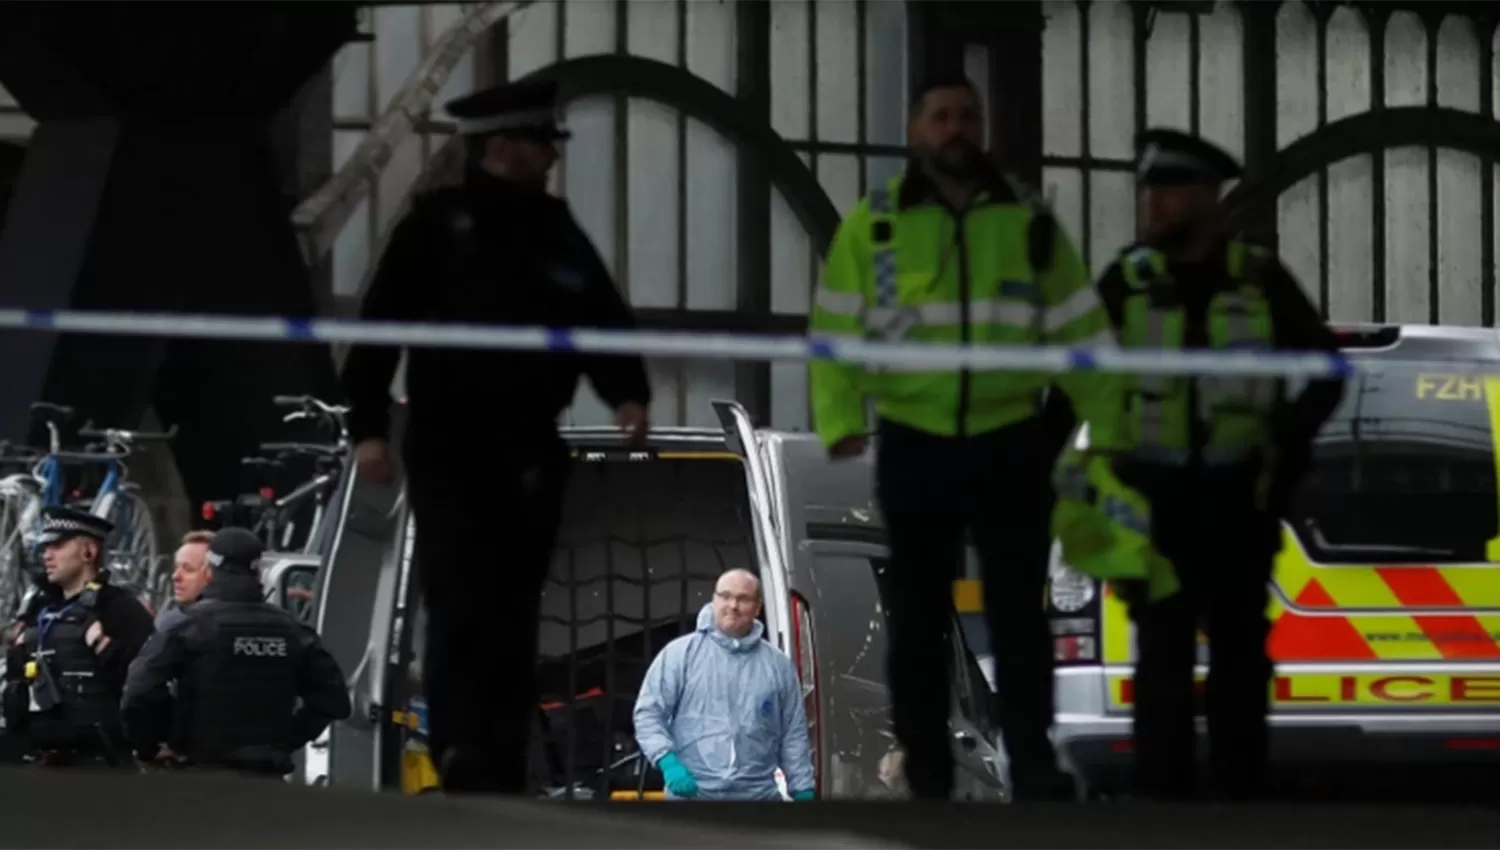 Alerta terrorista en Londres: hallaron explosivos en una estación de metro y en dos aeropuertos